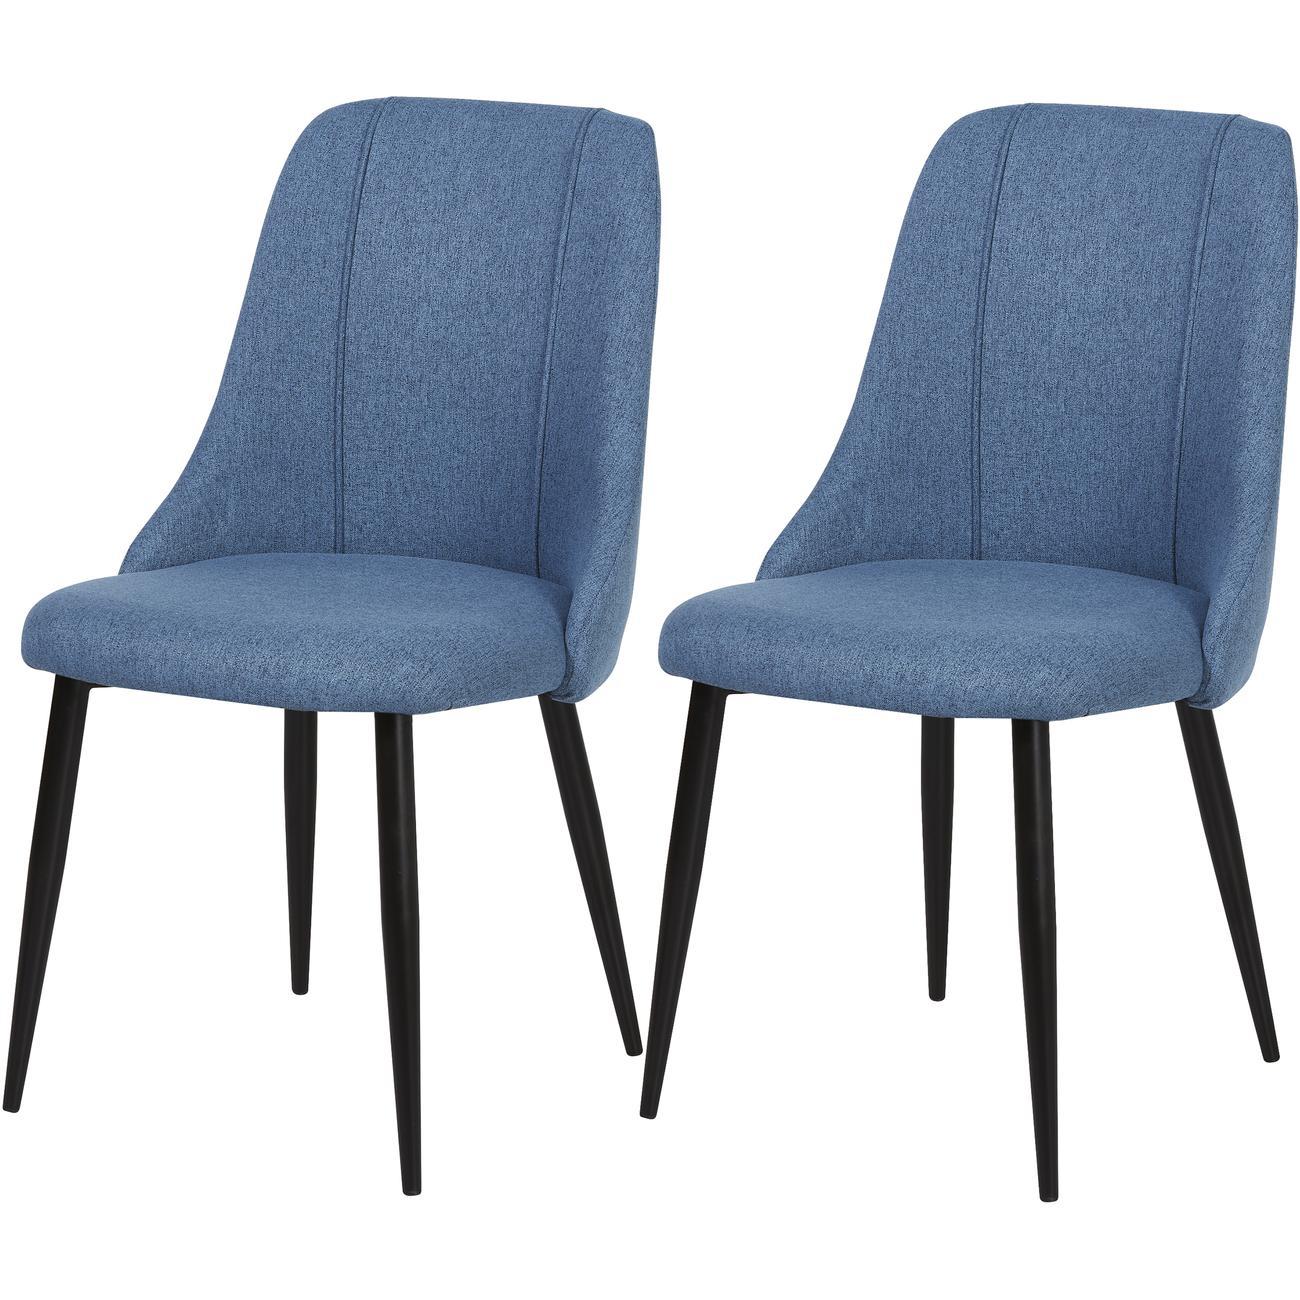 Chaise assise tissu bleu canard pieds métal - Lot de 2